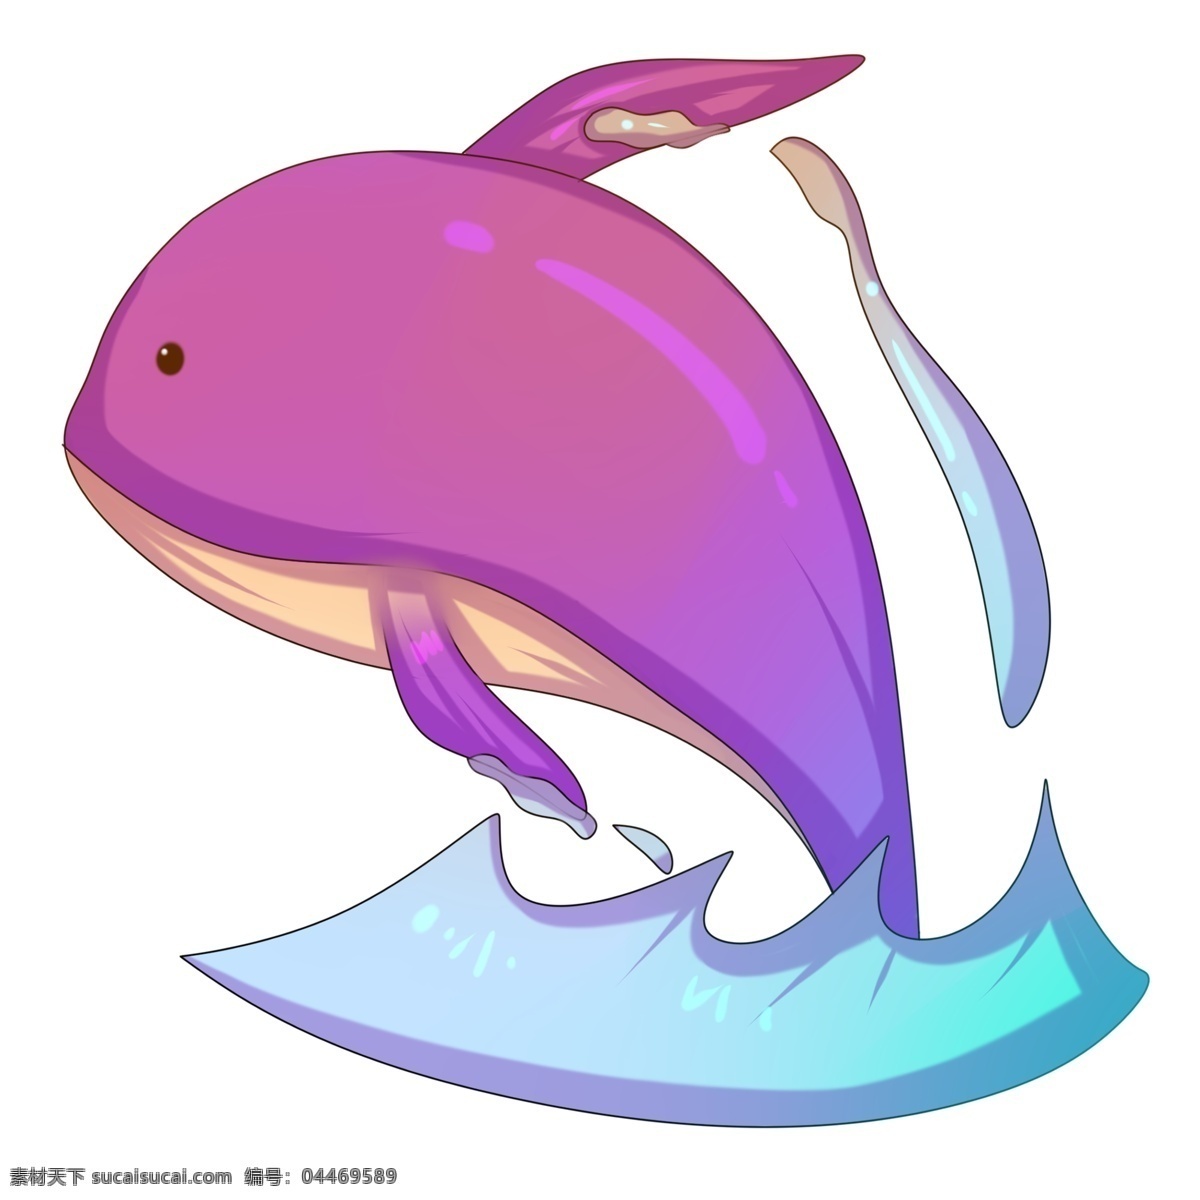 卡通 手绘 粉色 鲸鱼 遨游 插画 海洋 大海 动物 鱼形 脊椎动物 身体流线型 游泳 梦幻 巨大 可爱